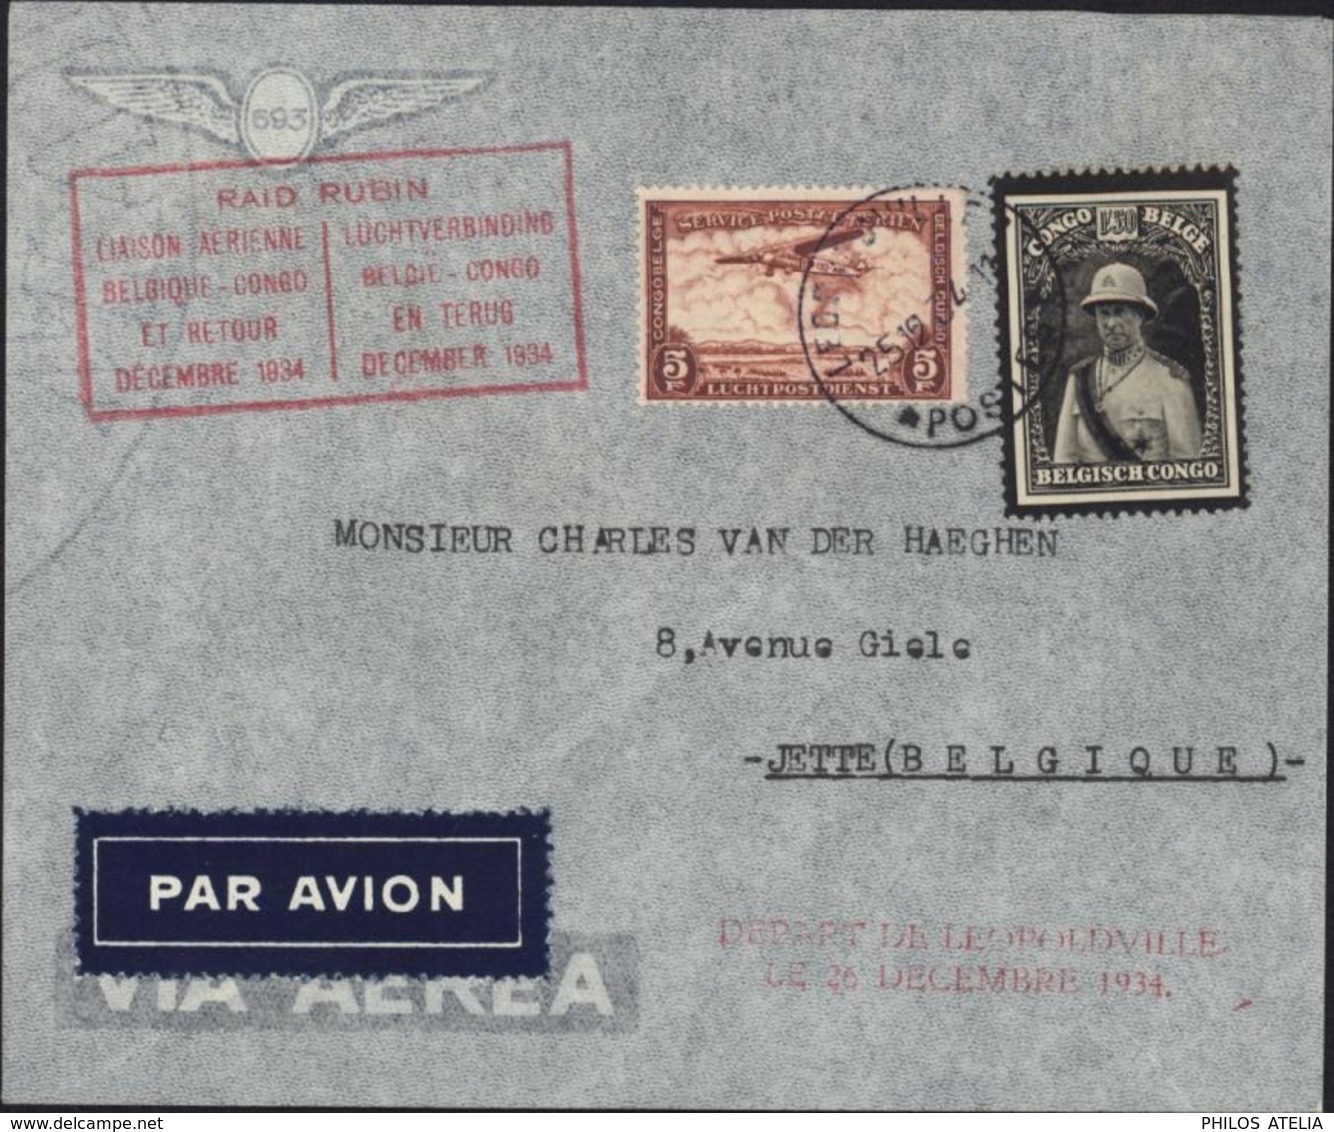 Congo Belge Poste Aérienne Raid Rubin Liaison Aérienne Belgique Congo Et Retour Décembre 1934 YT 184 + PA12 - Lettres & Documents